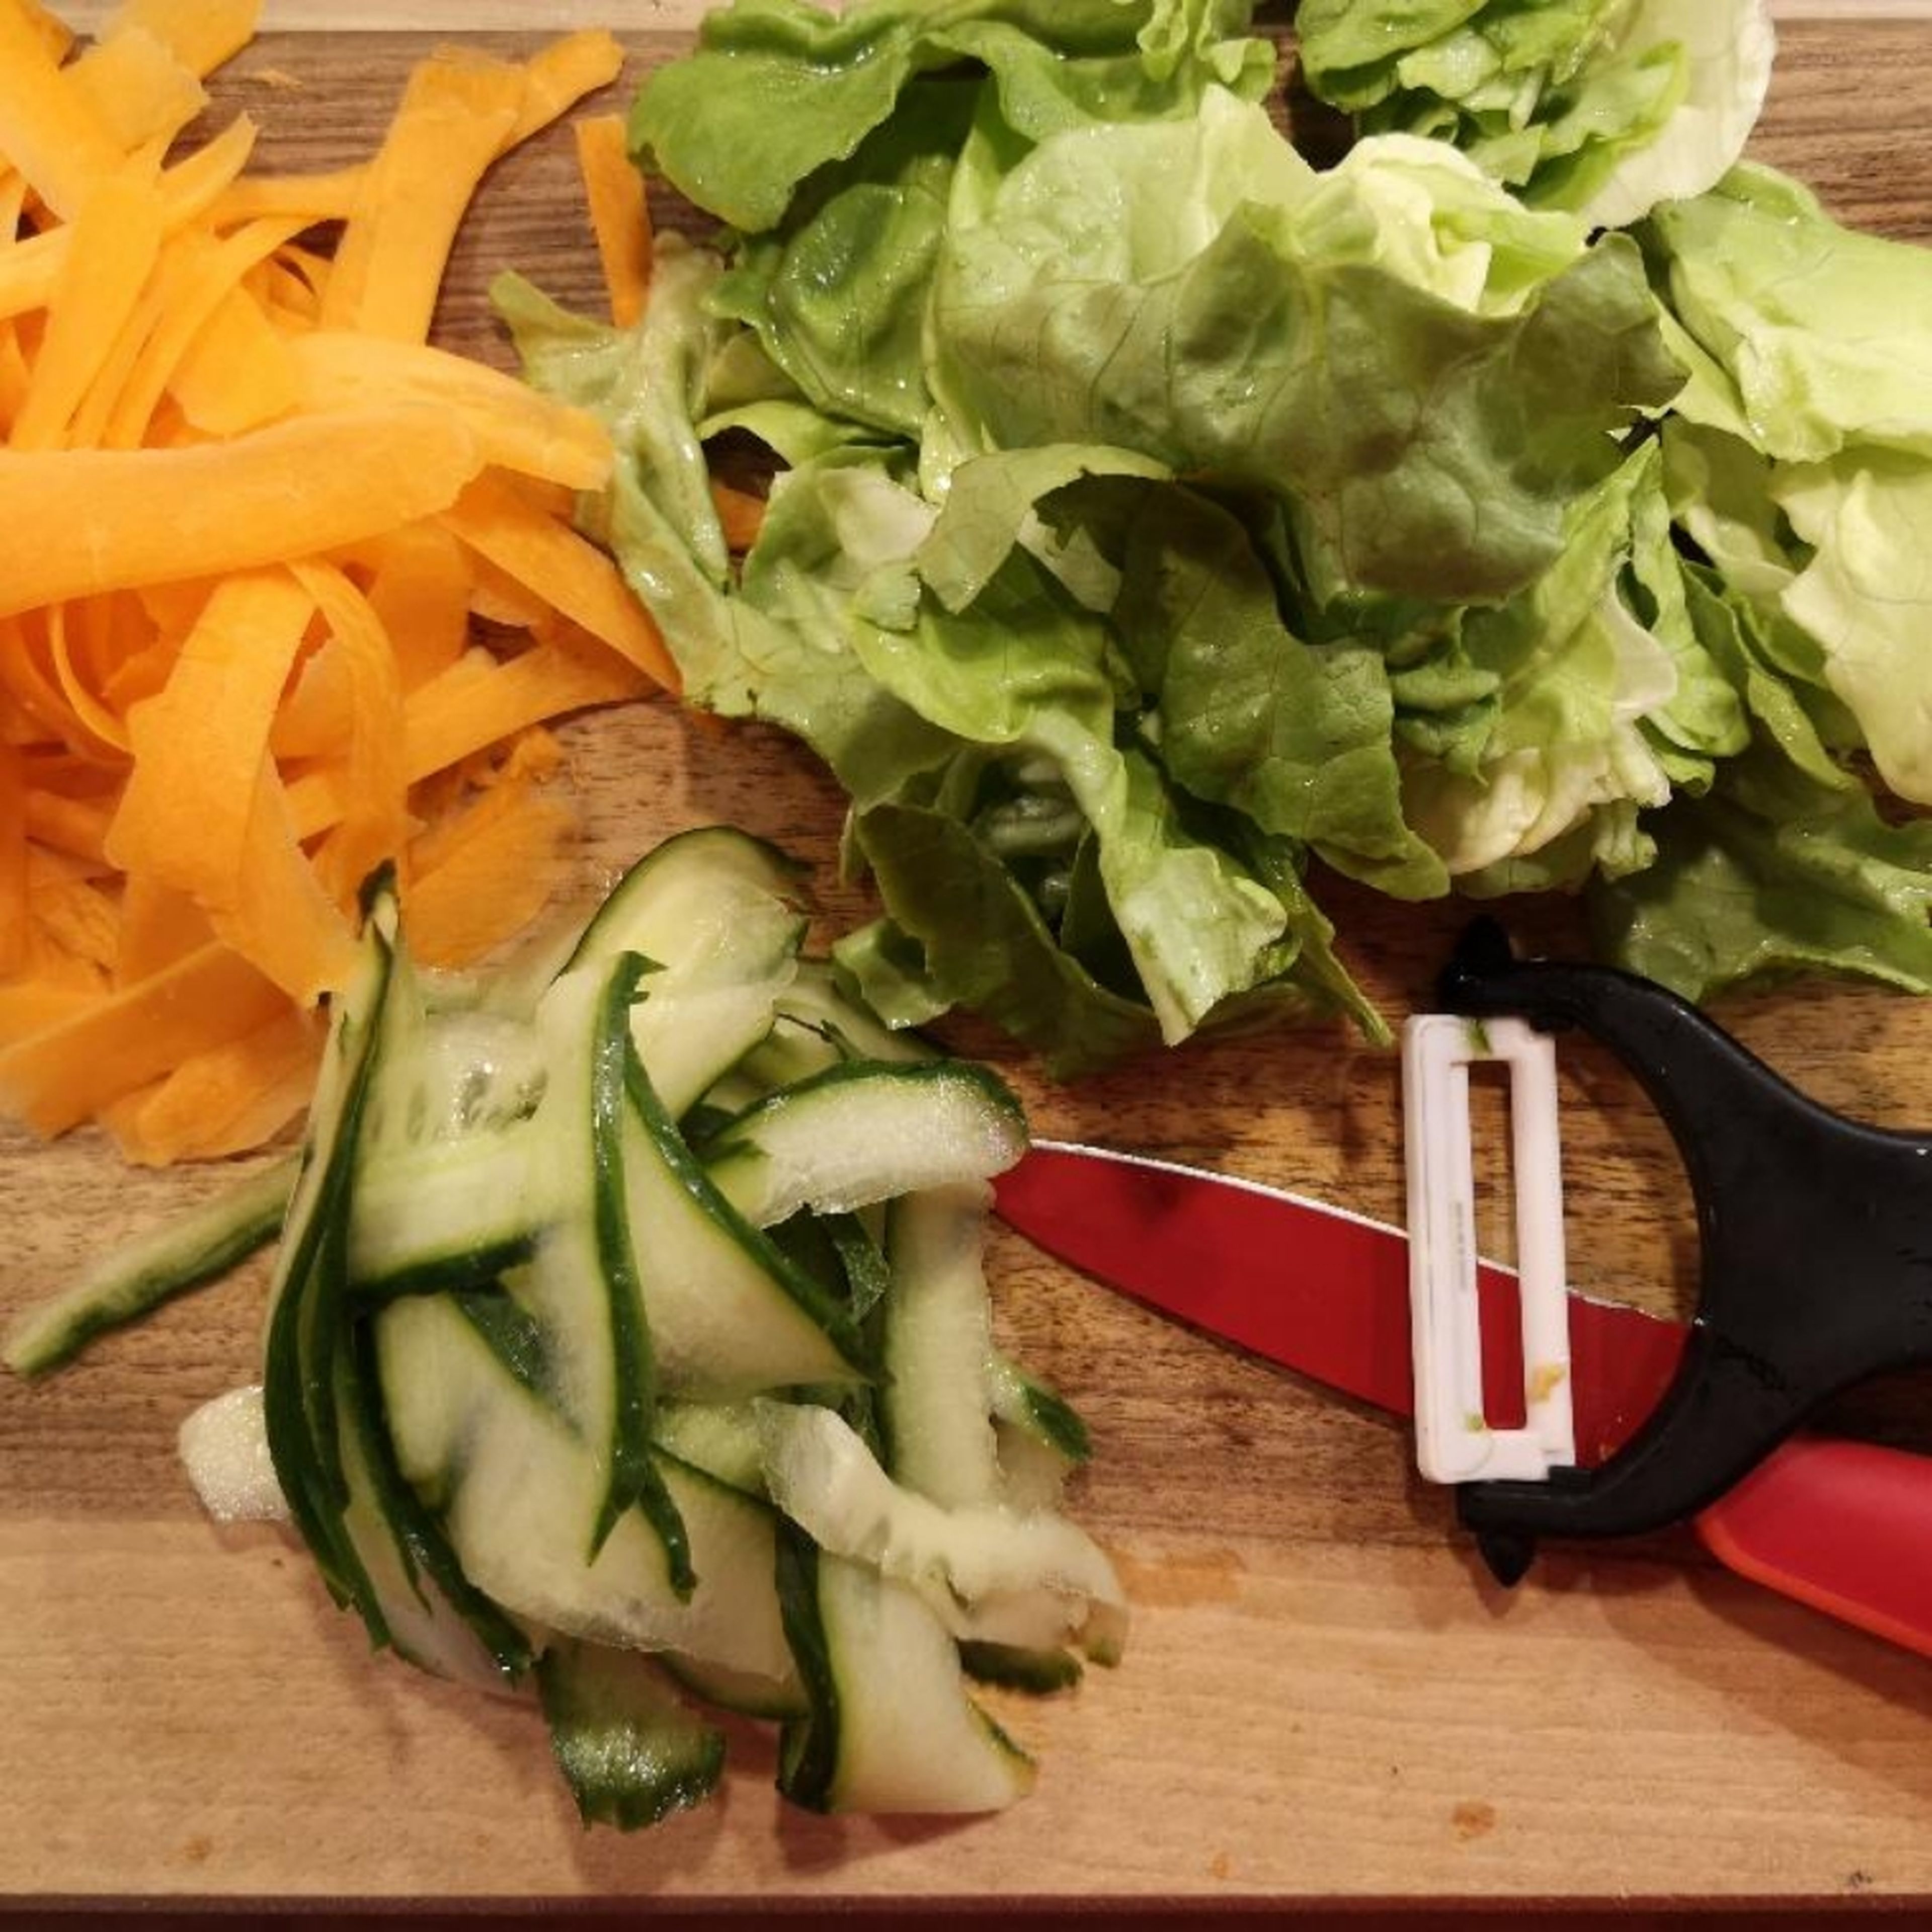 Die Karotte schälen und mit dem Gemüsehobel in mittelgroße Streifen hobeln. Die Gurke ebenso hobeln. Einige Salatblätter waschen und auf die gewünschte Essgröße bringen.